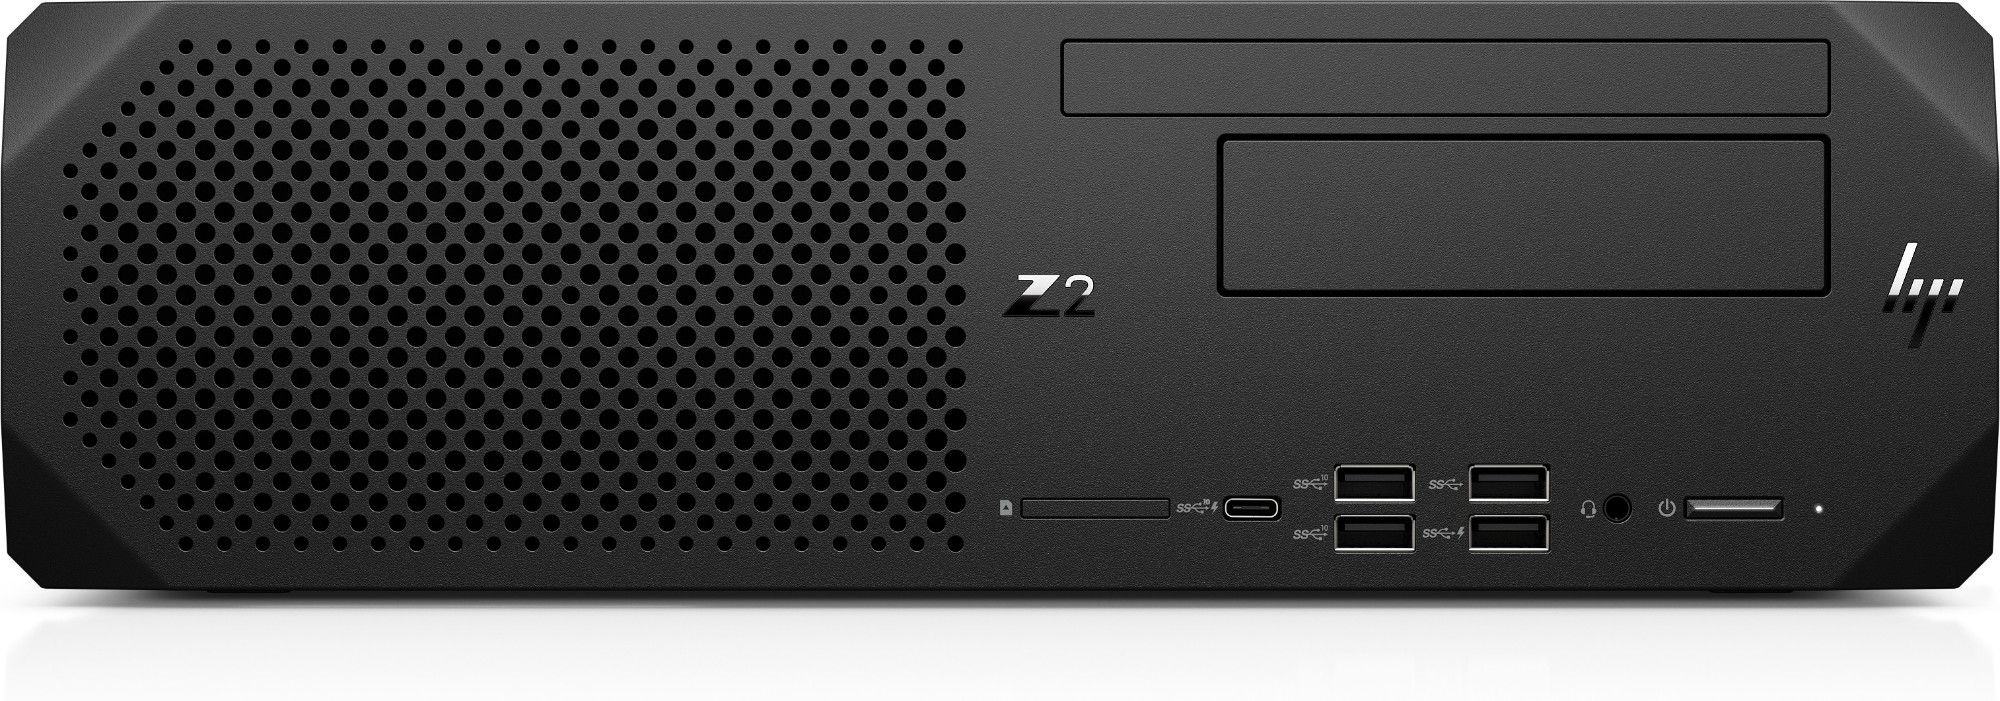 HP Z2 G8 i7-11700 SFF Intel® Core™ i7 16 GB DDR4-SDRAM 512 GB SSD Windows 10 Pro Workstation Black